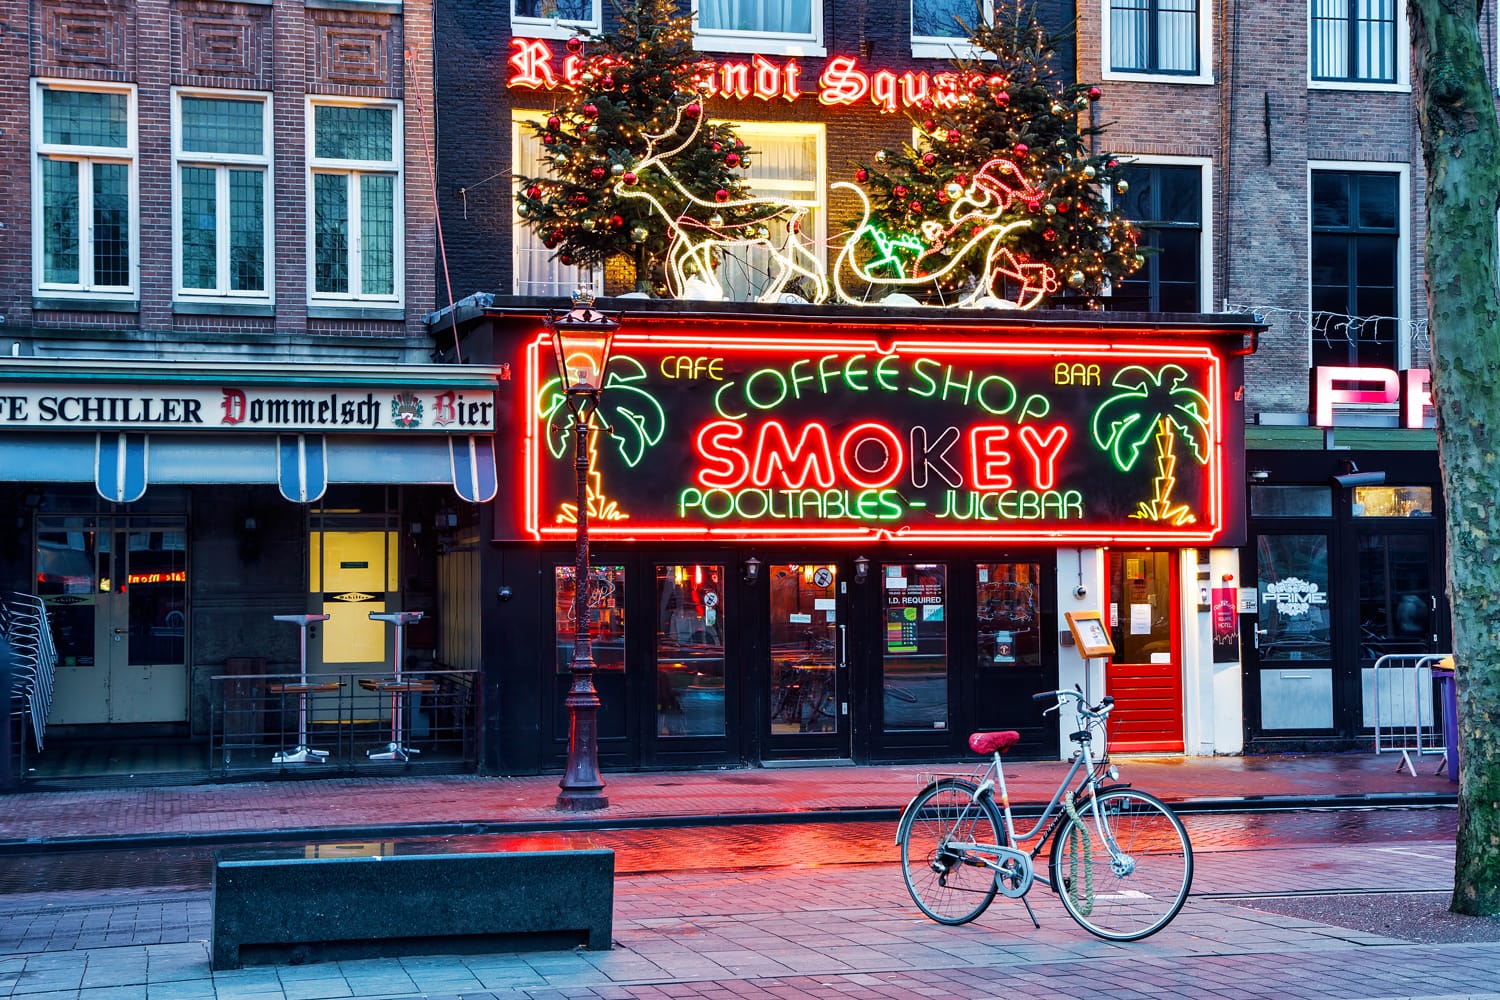 Το Coffeeshop Smokey είναι ένα καφενείο κάνναβης που βρίσκεται στη μεγαλύτερη πλατεία του Άμστερνταμ, την πλατεία Rembrandt.